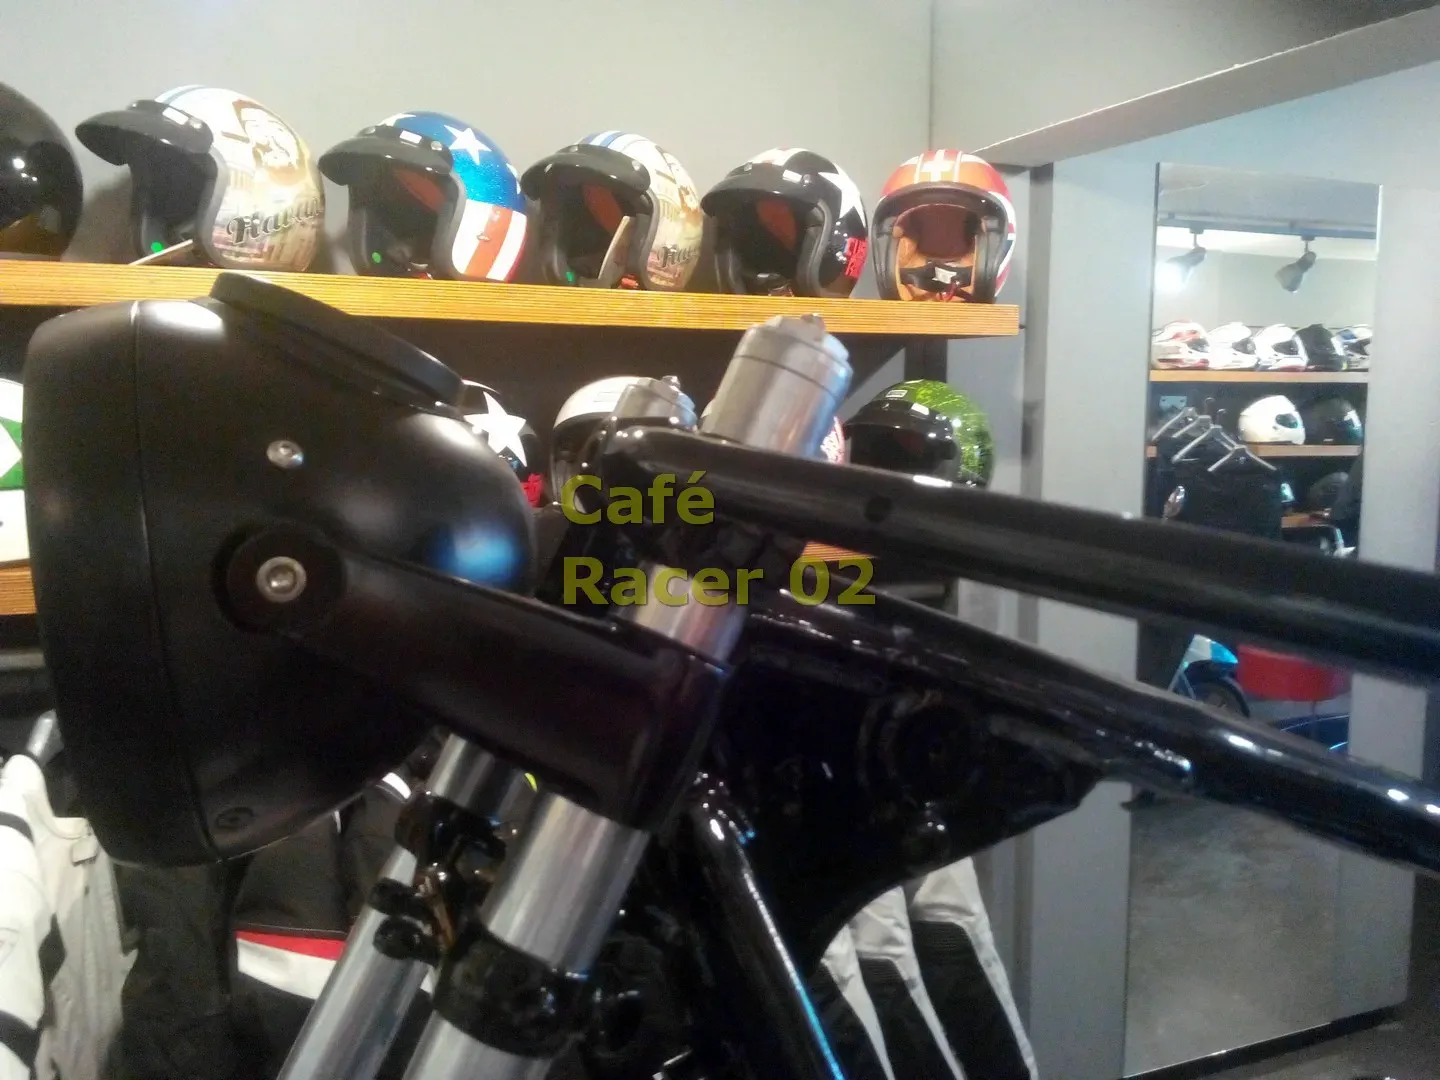 Café Racer 02 motosiklet-boyadan geliş, gidon kolu ve far yandan detay çekimi